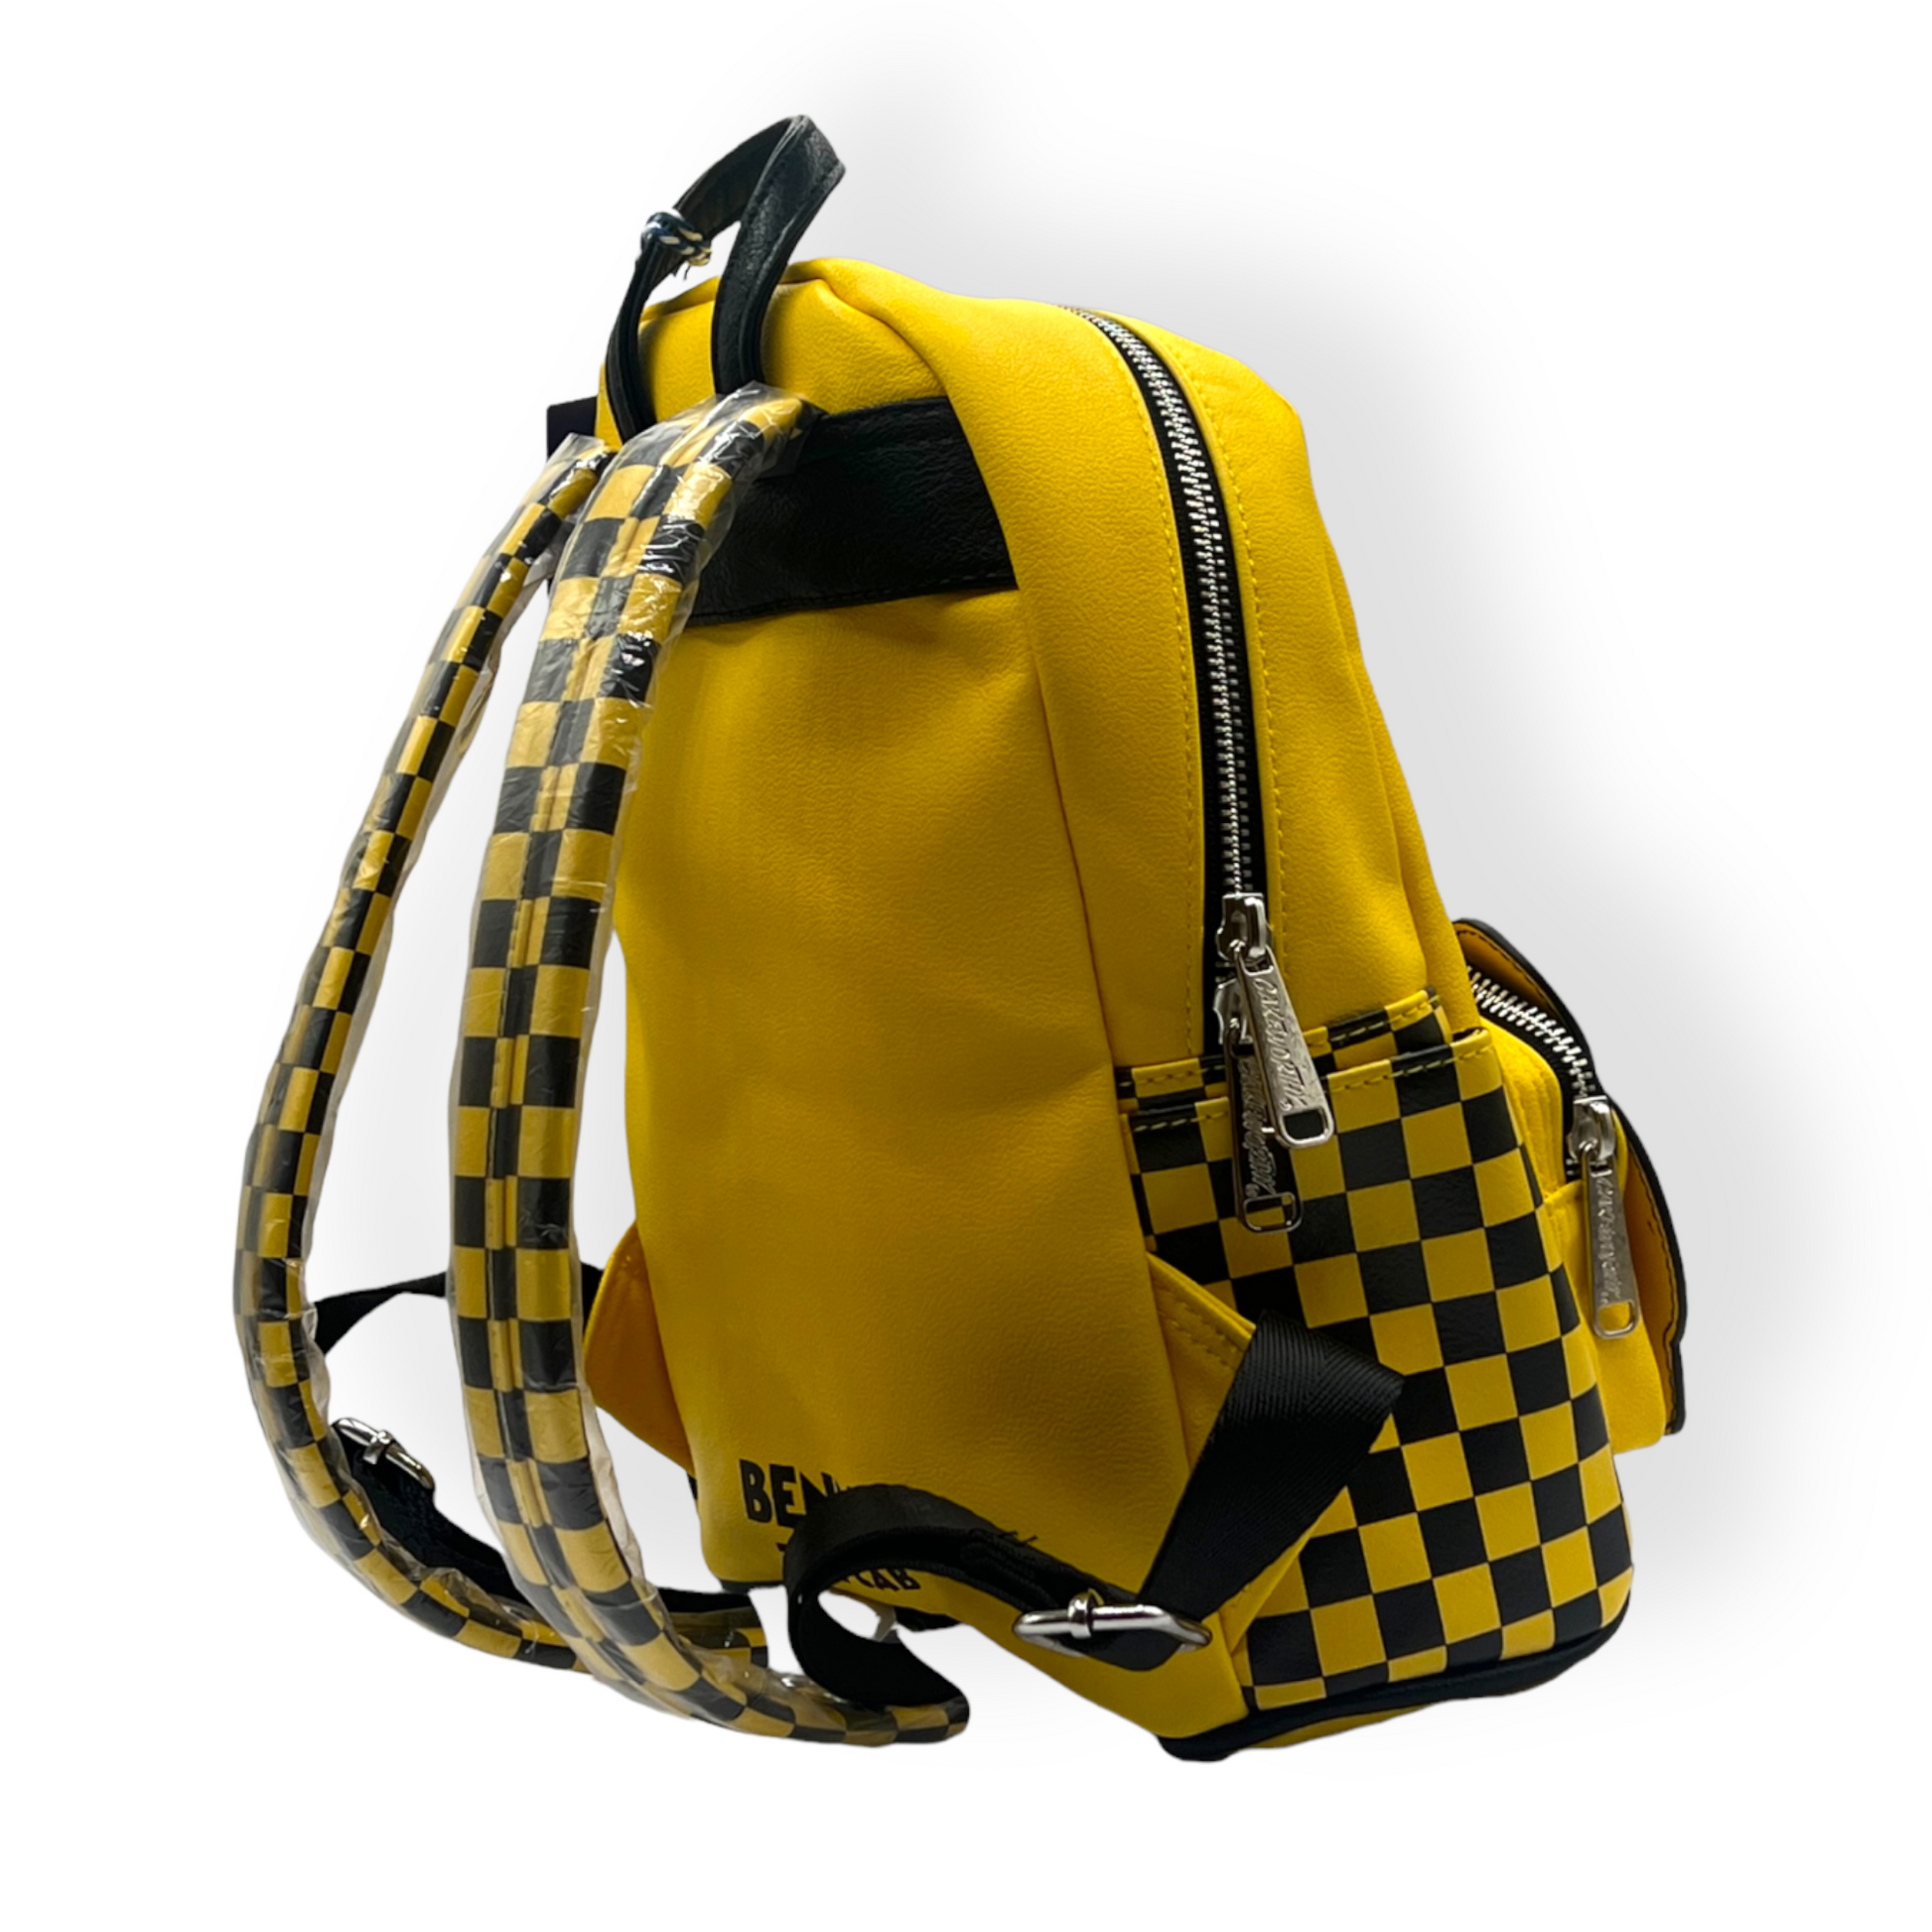 Roger Rabbit Denim Mini Backpack - ShopperBoard